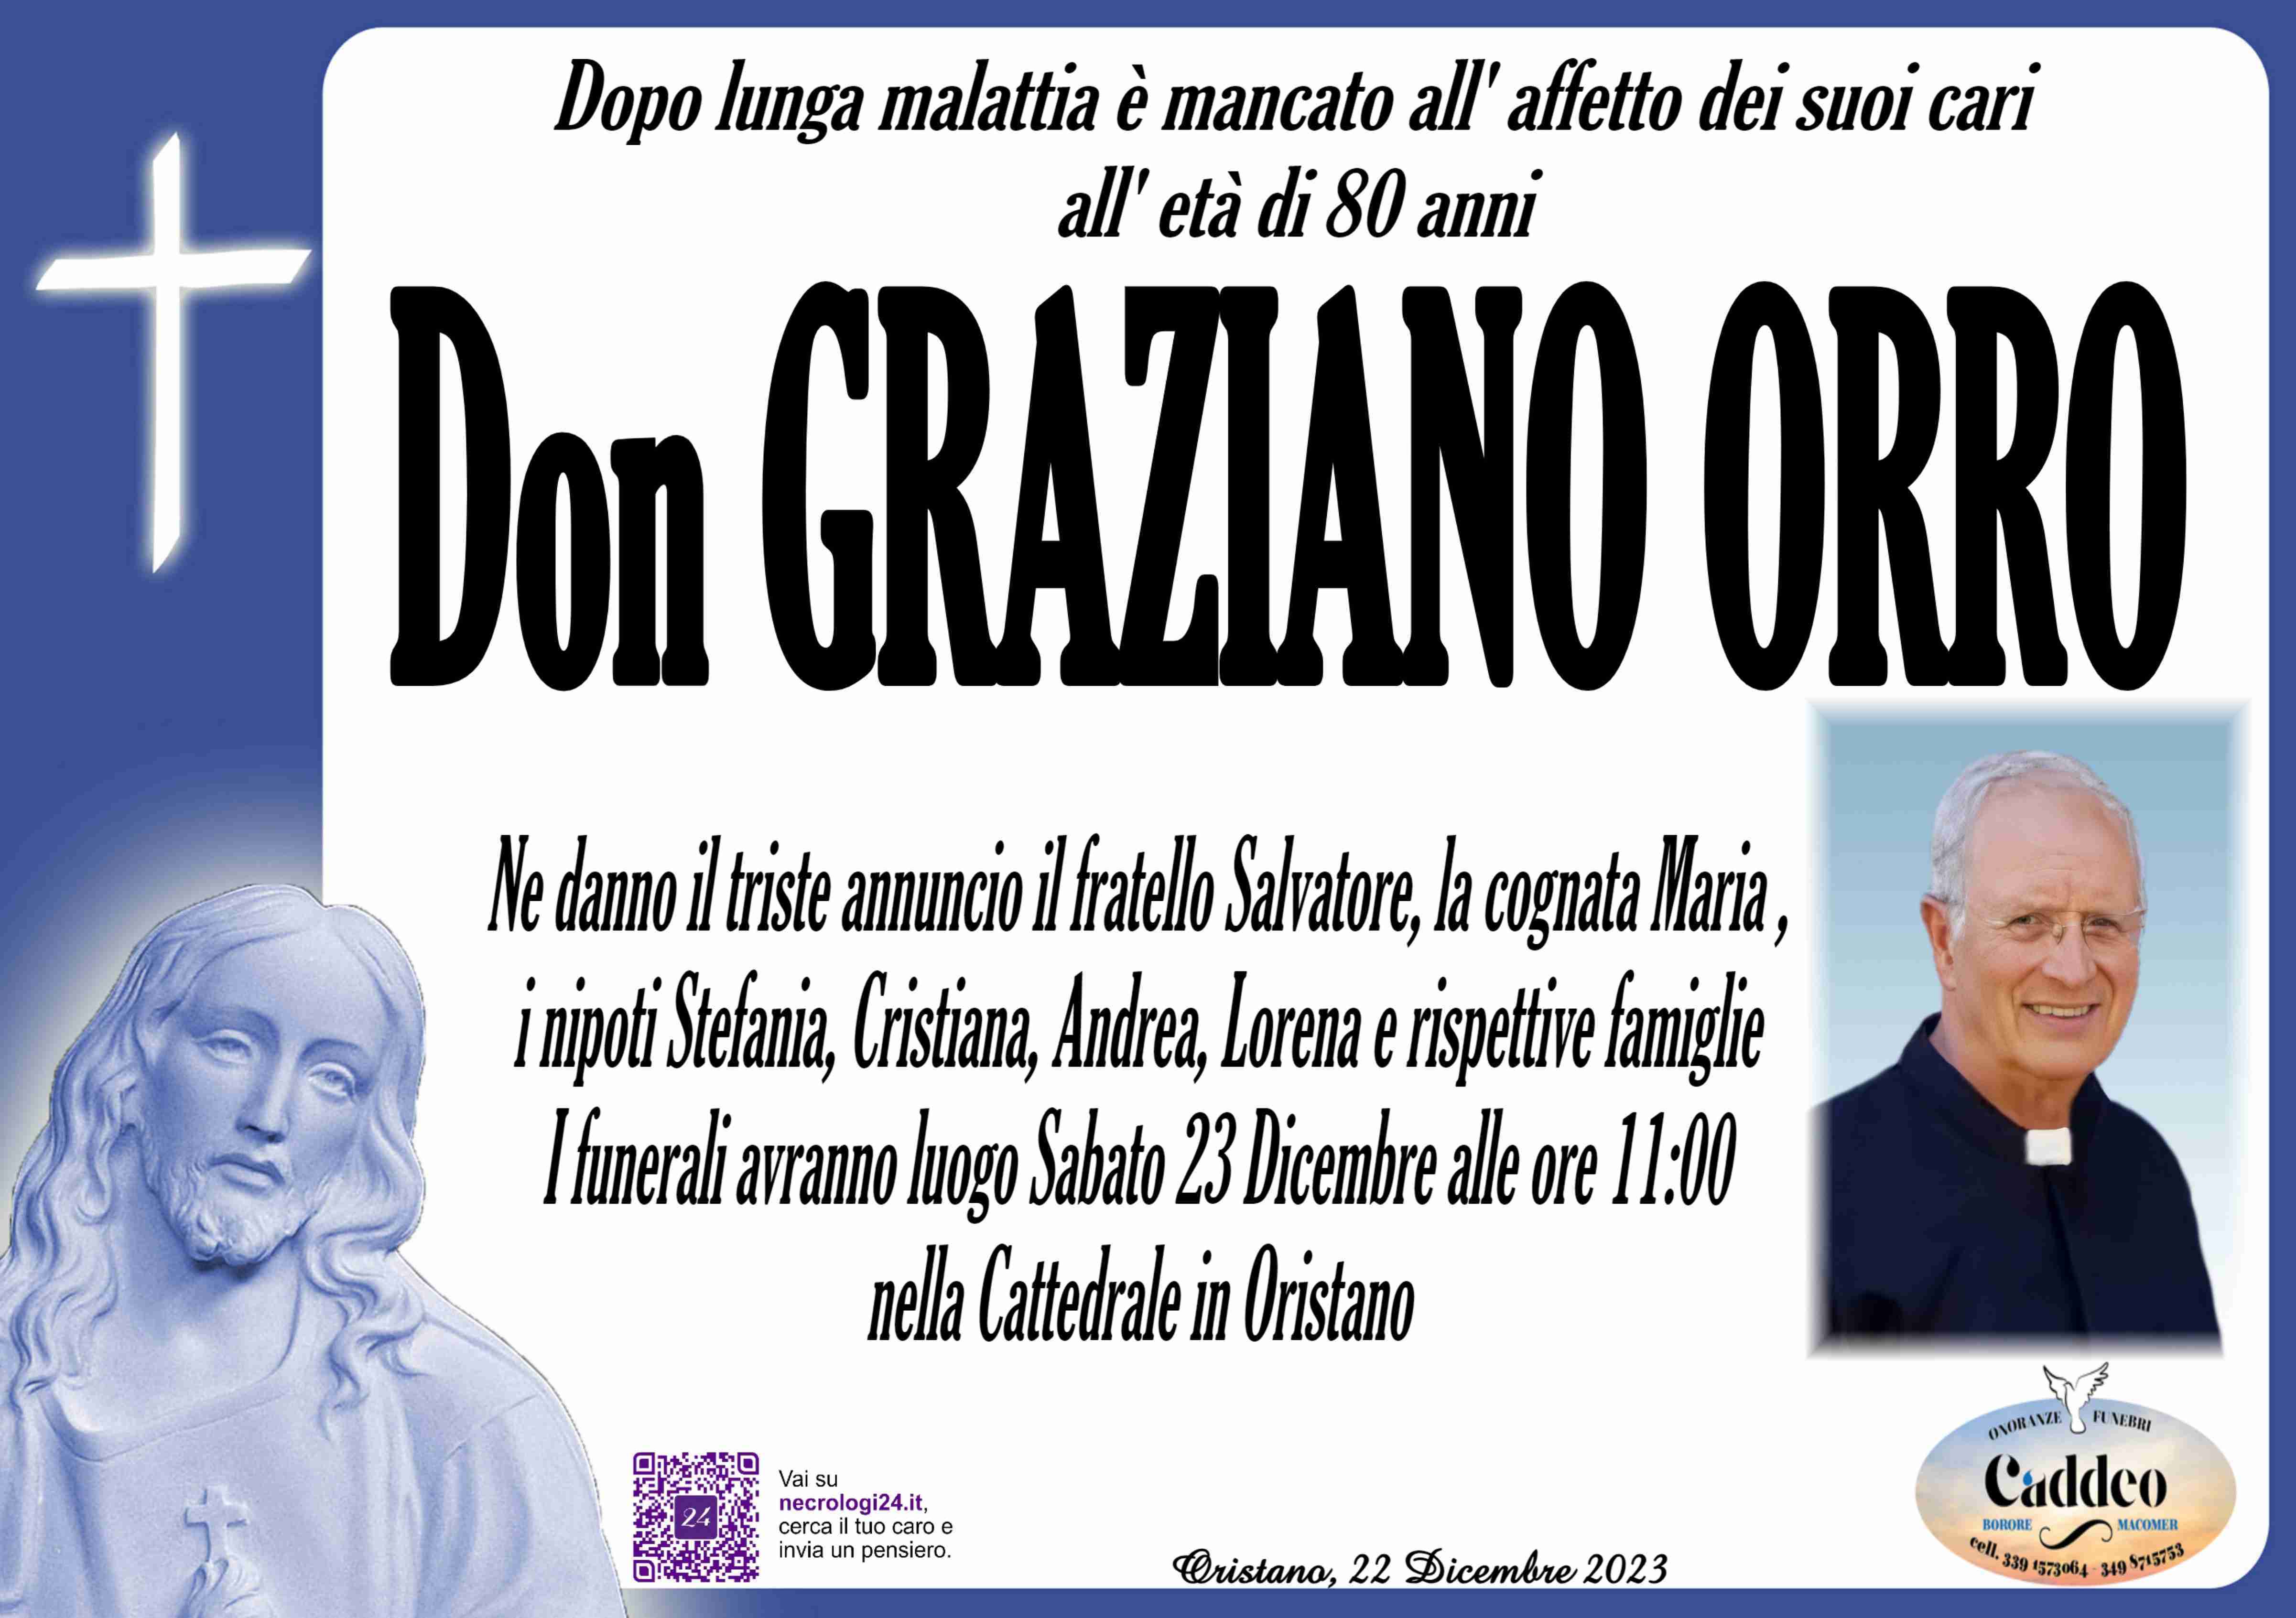 Graziano Orro